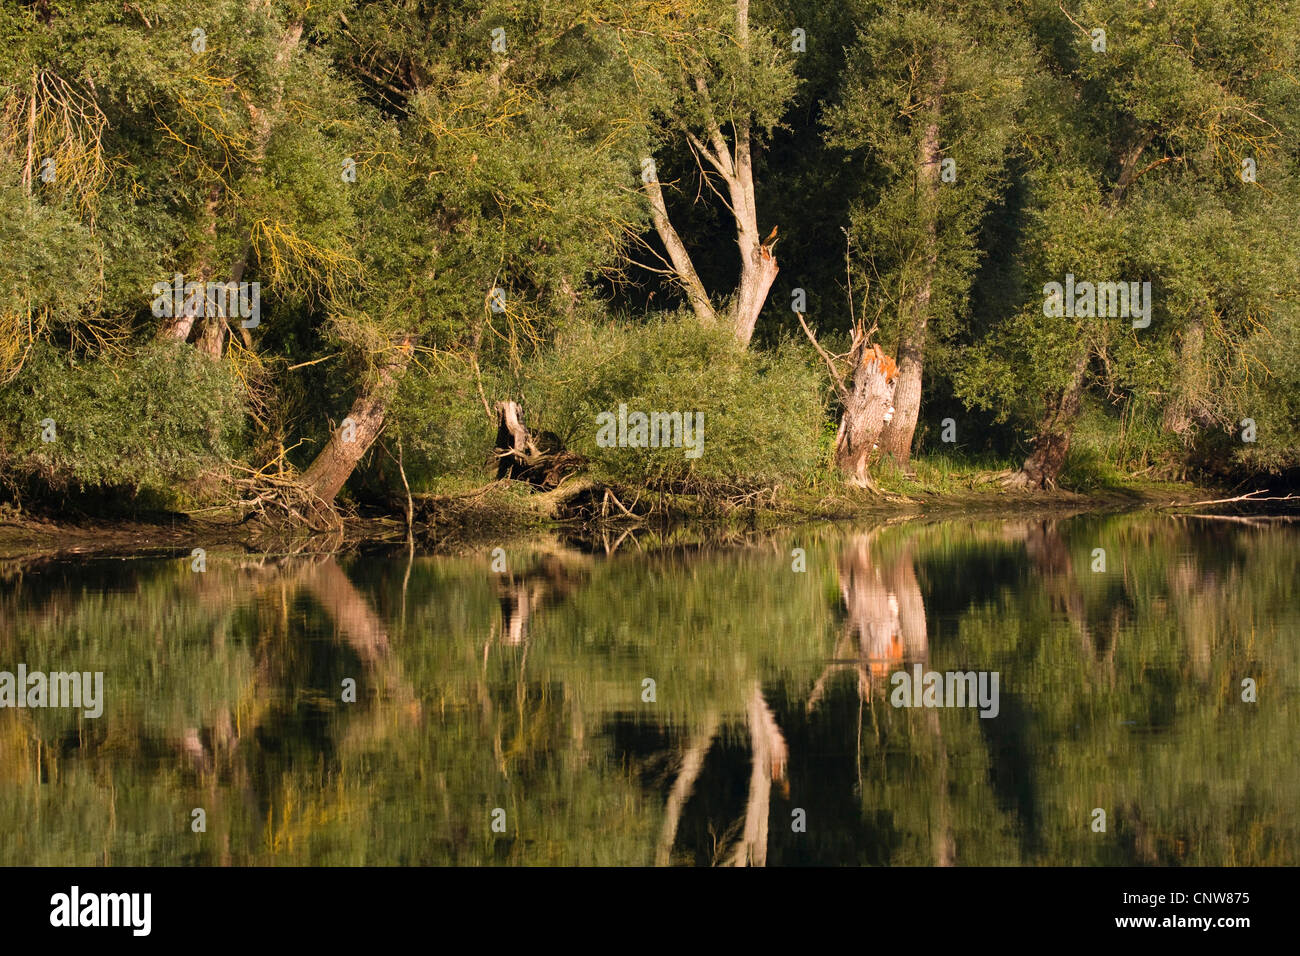 Le saule blanc (Salix alba), sur la rive du Rhin avec image miroir, Allemagne, Rhénanie-Palatinat, Altrhein, Germersheim Banque D'Images